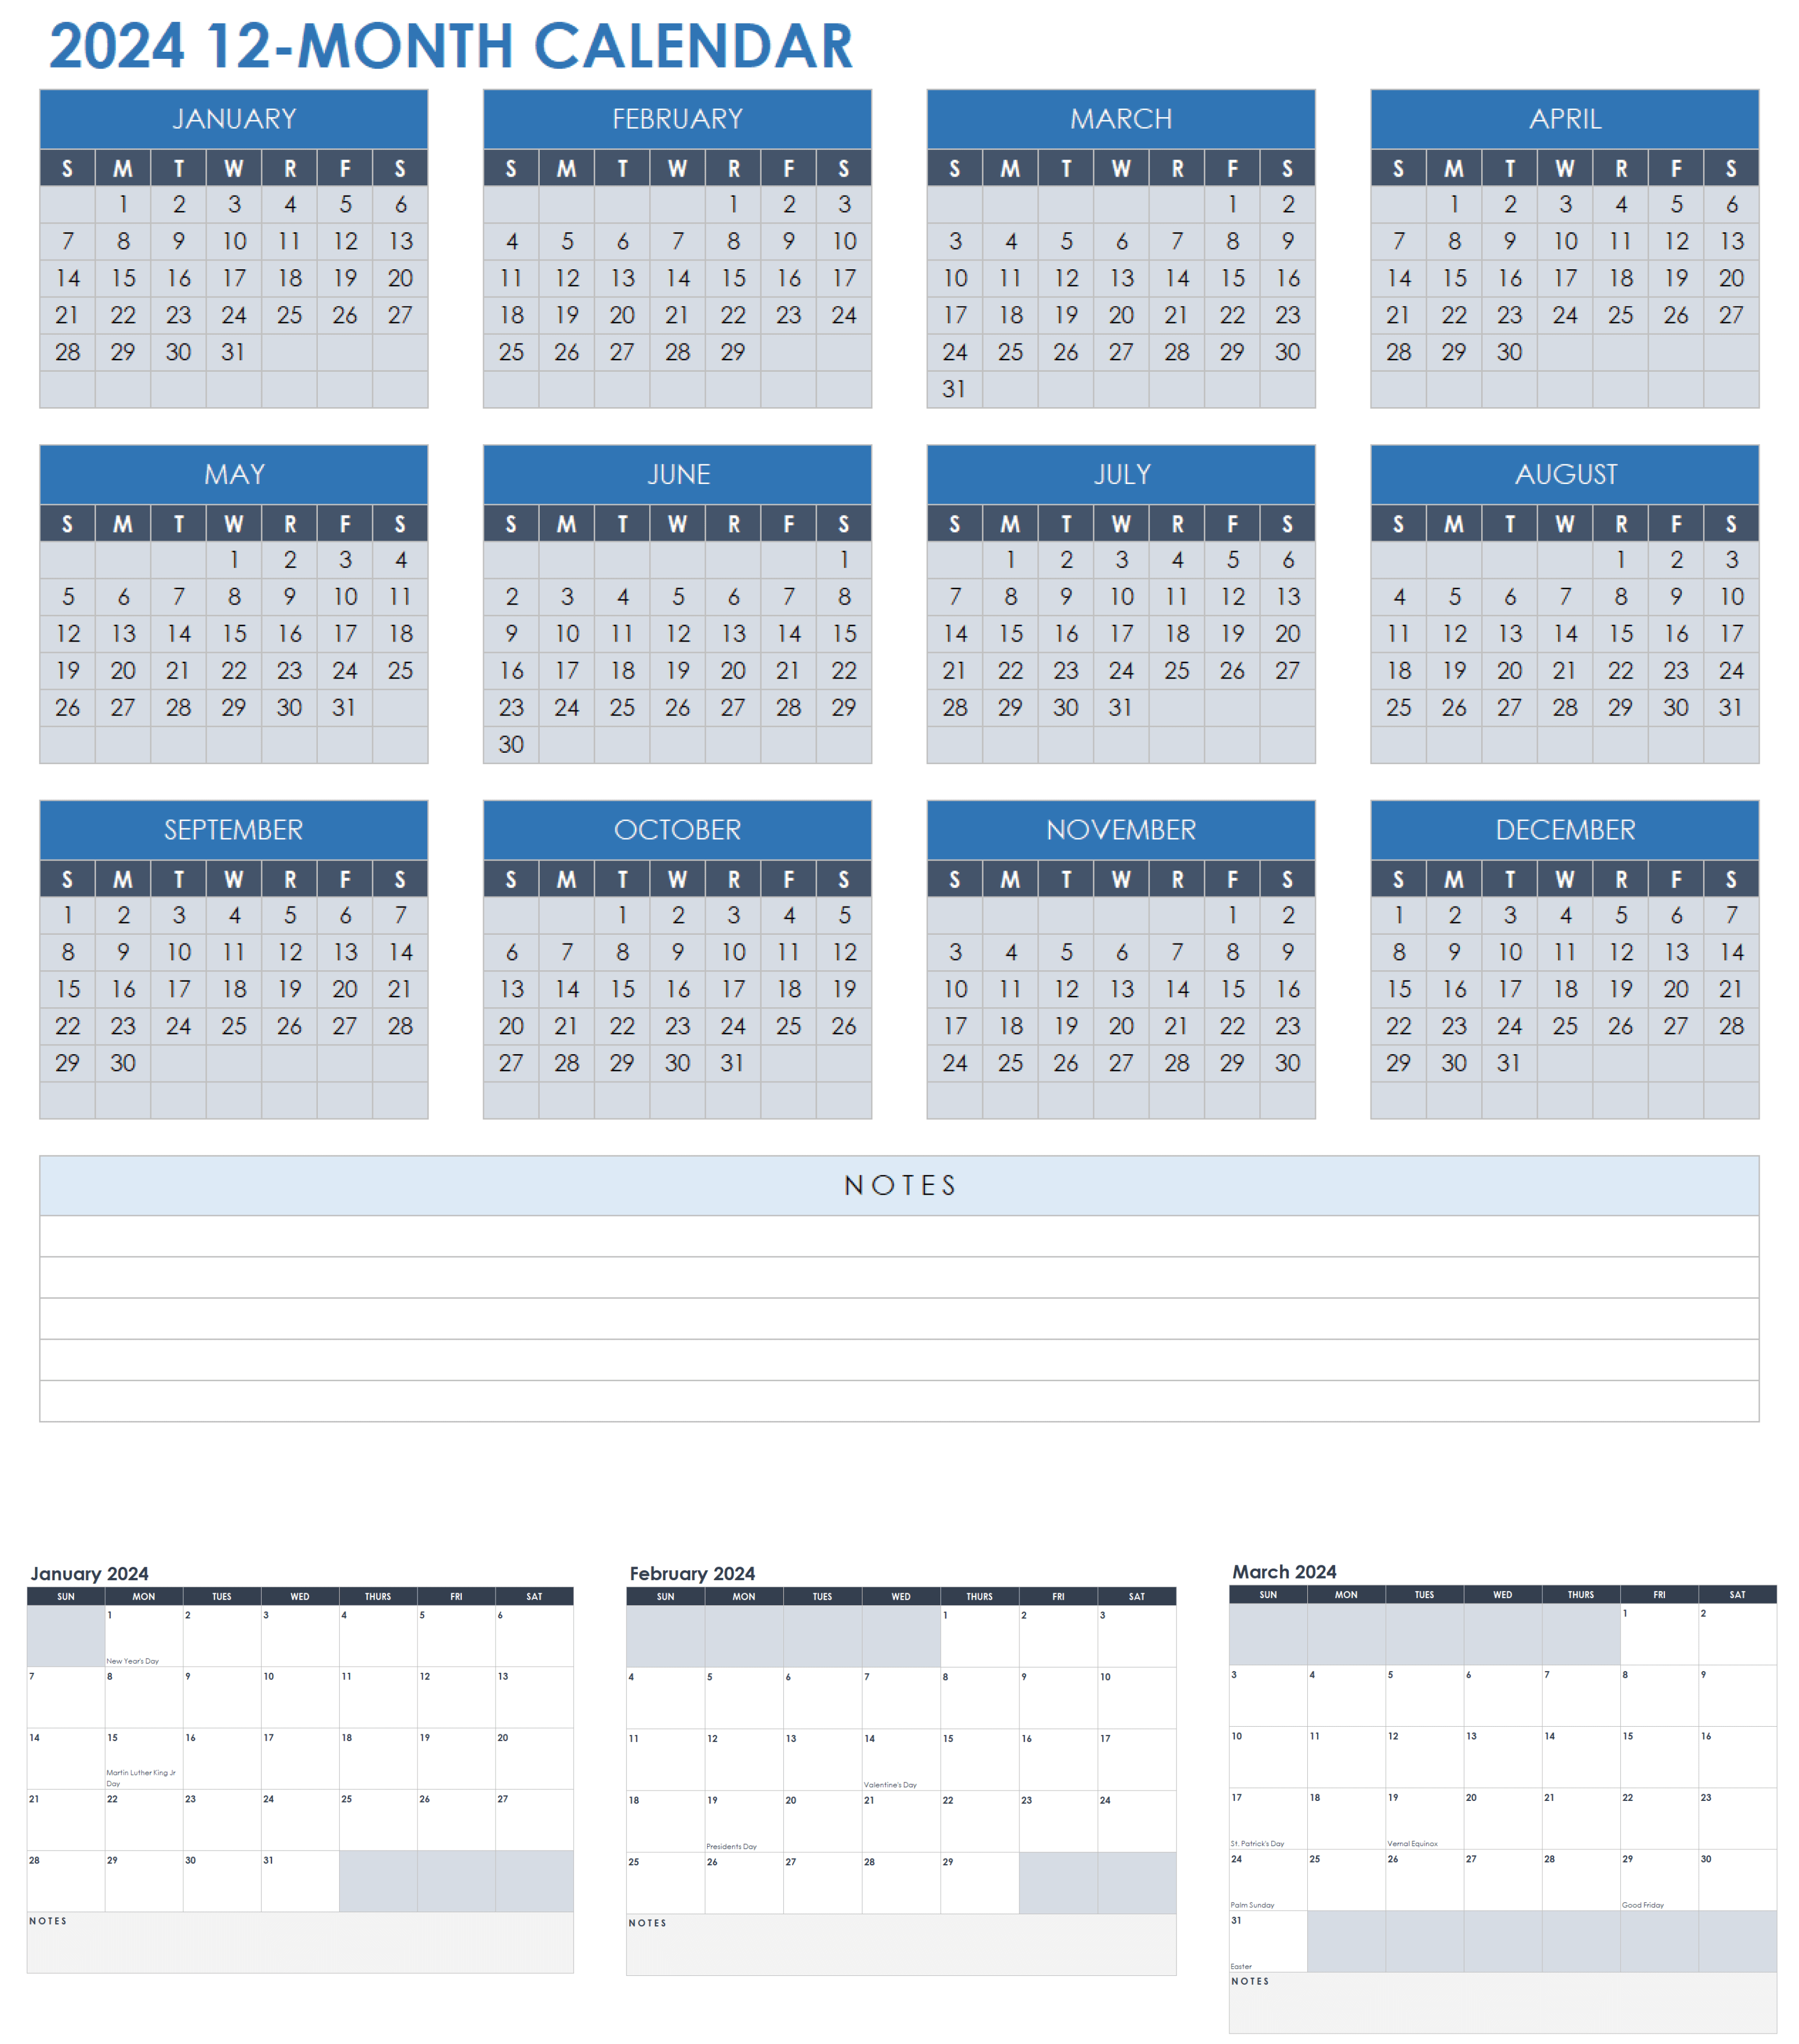 2024 12-Month Calendar Template